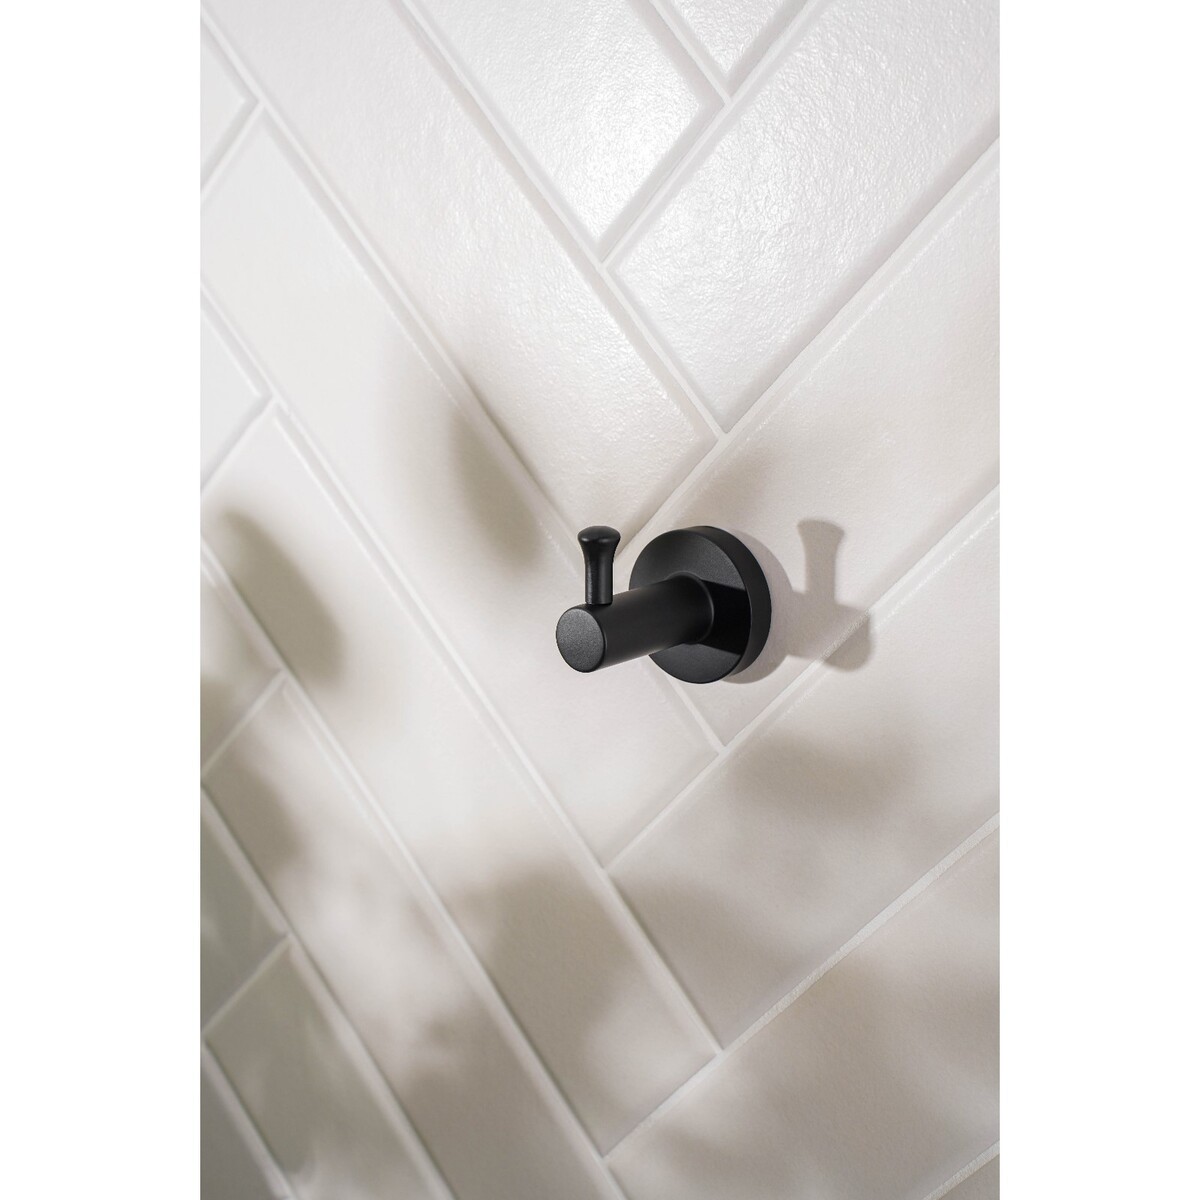 фото Крючок для ванной штольц stölz loft basic, цвет черный